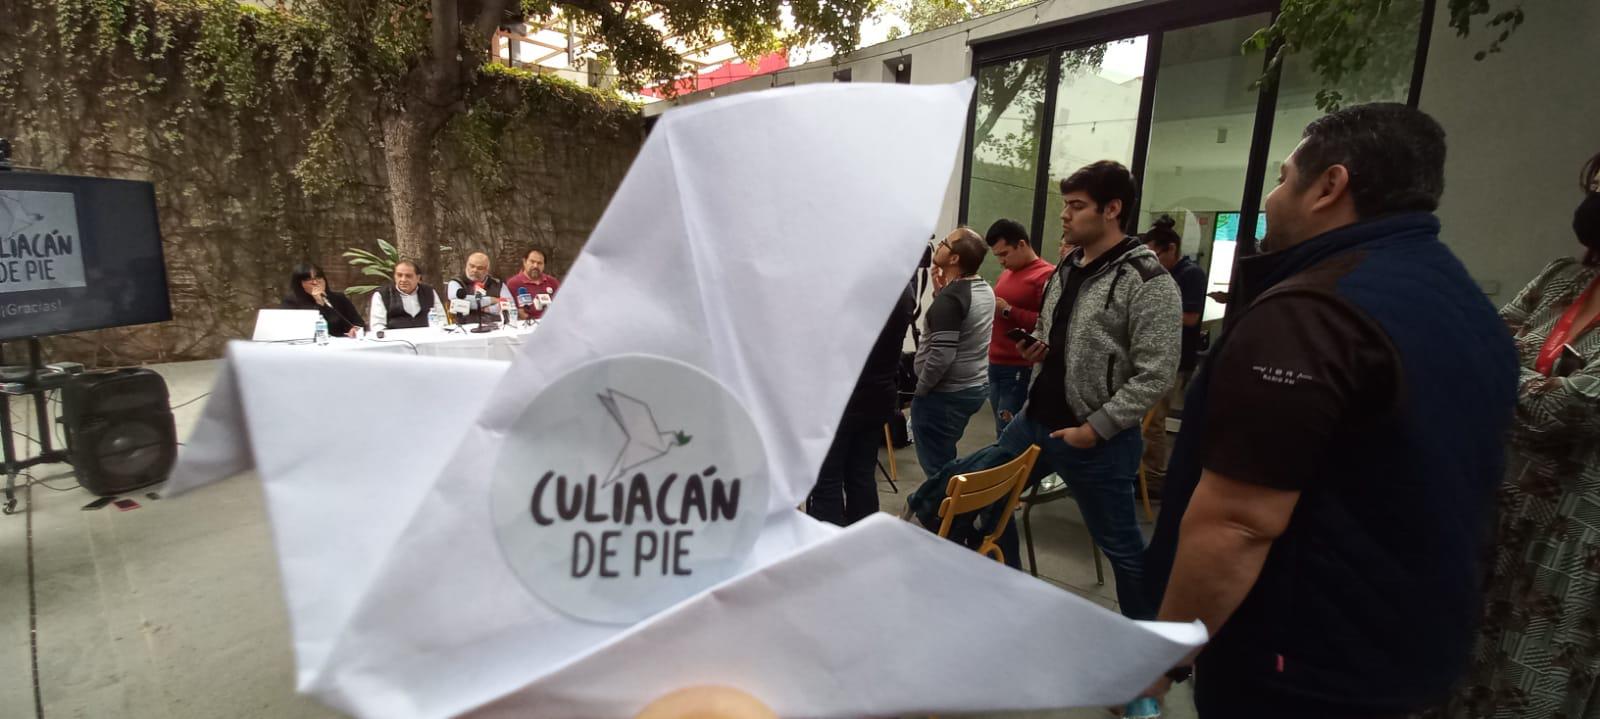 $!Invitan a movimiento Culiacán de Pie, un proyecto de paz después de Jueves Negro